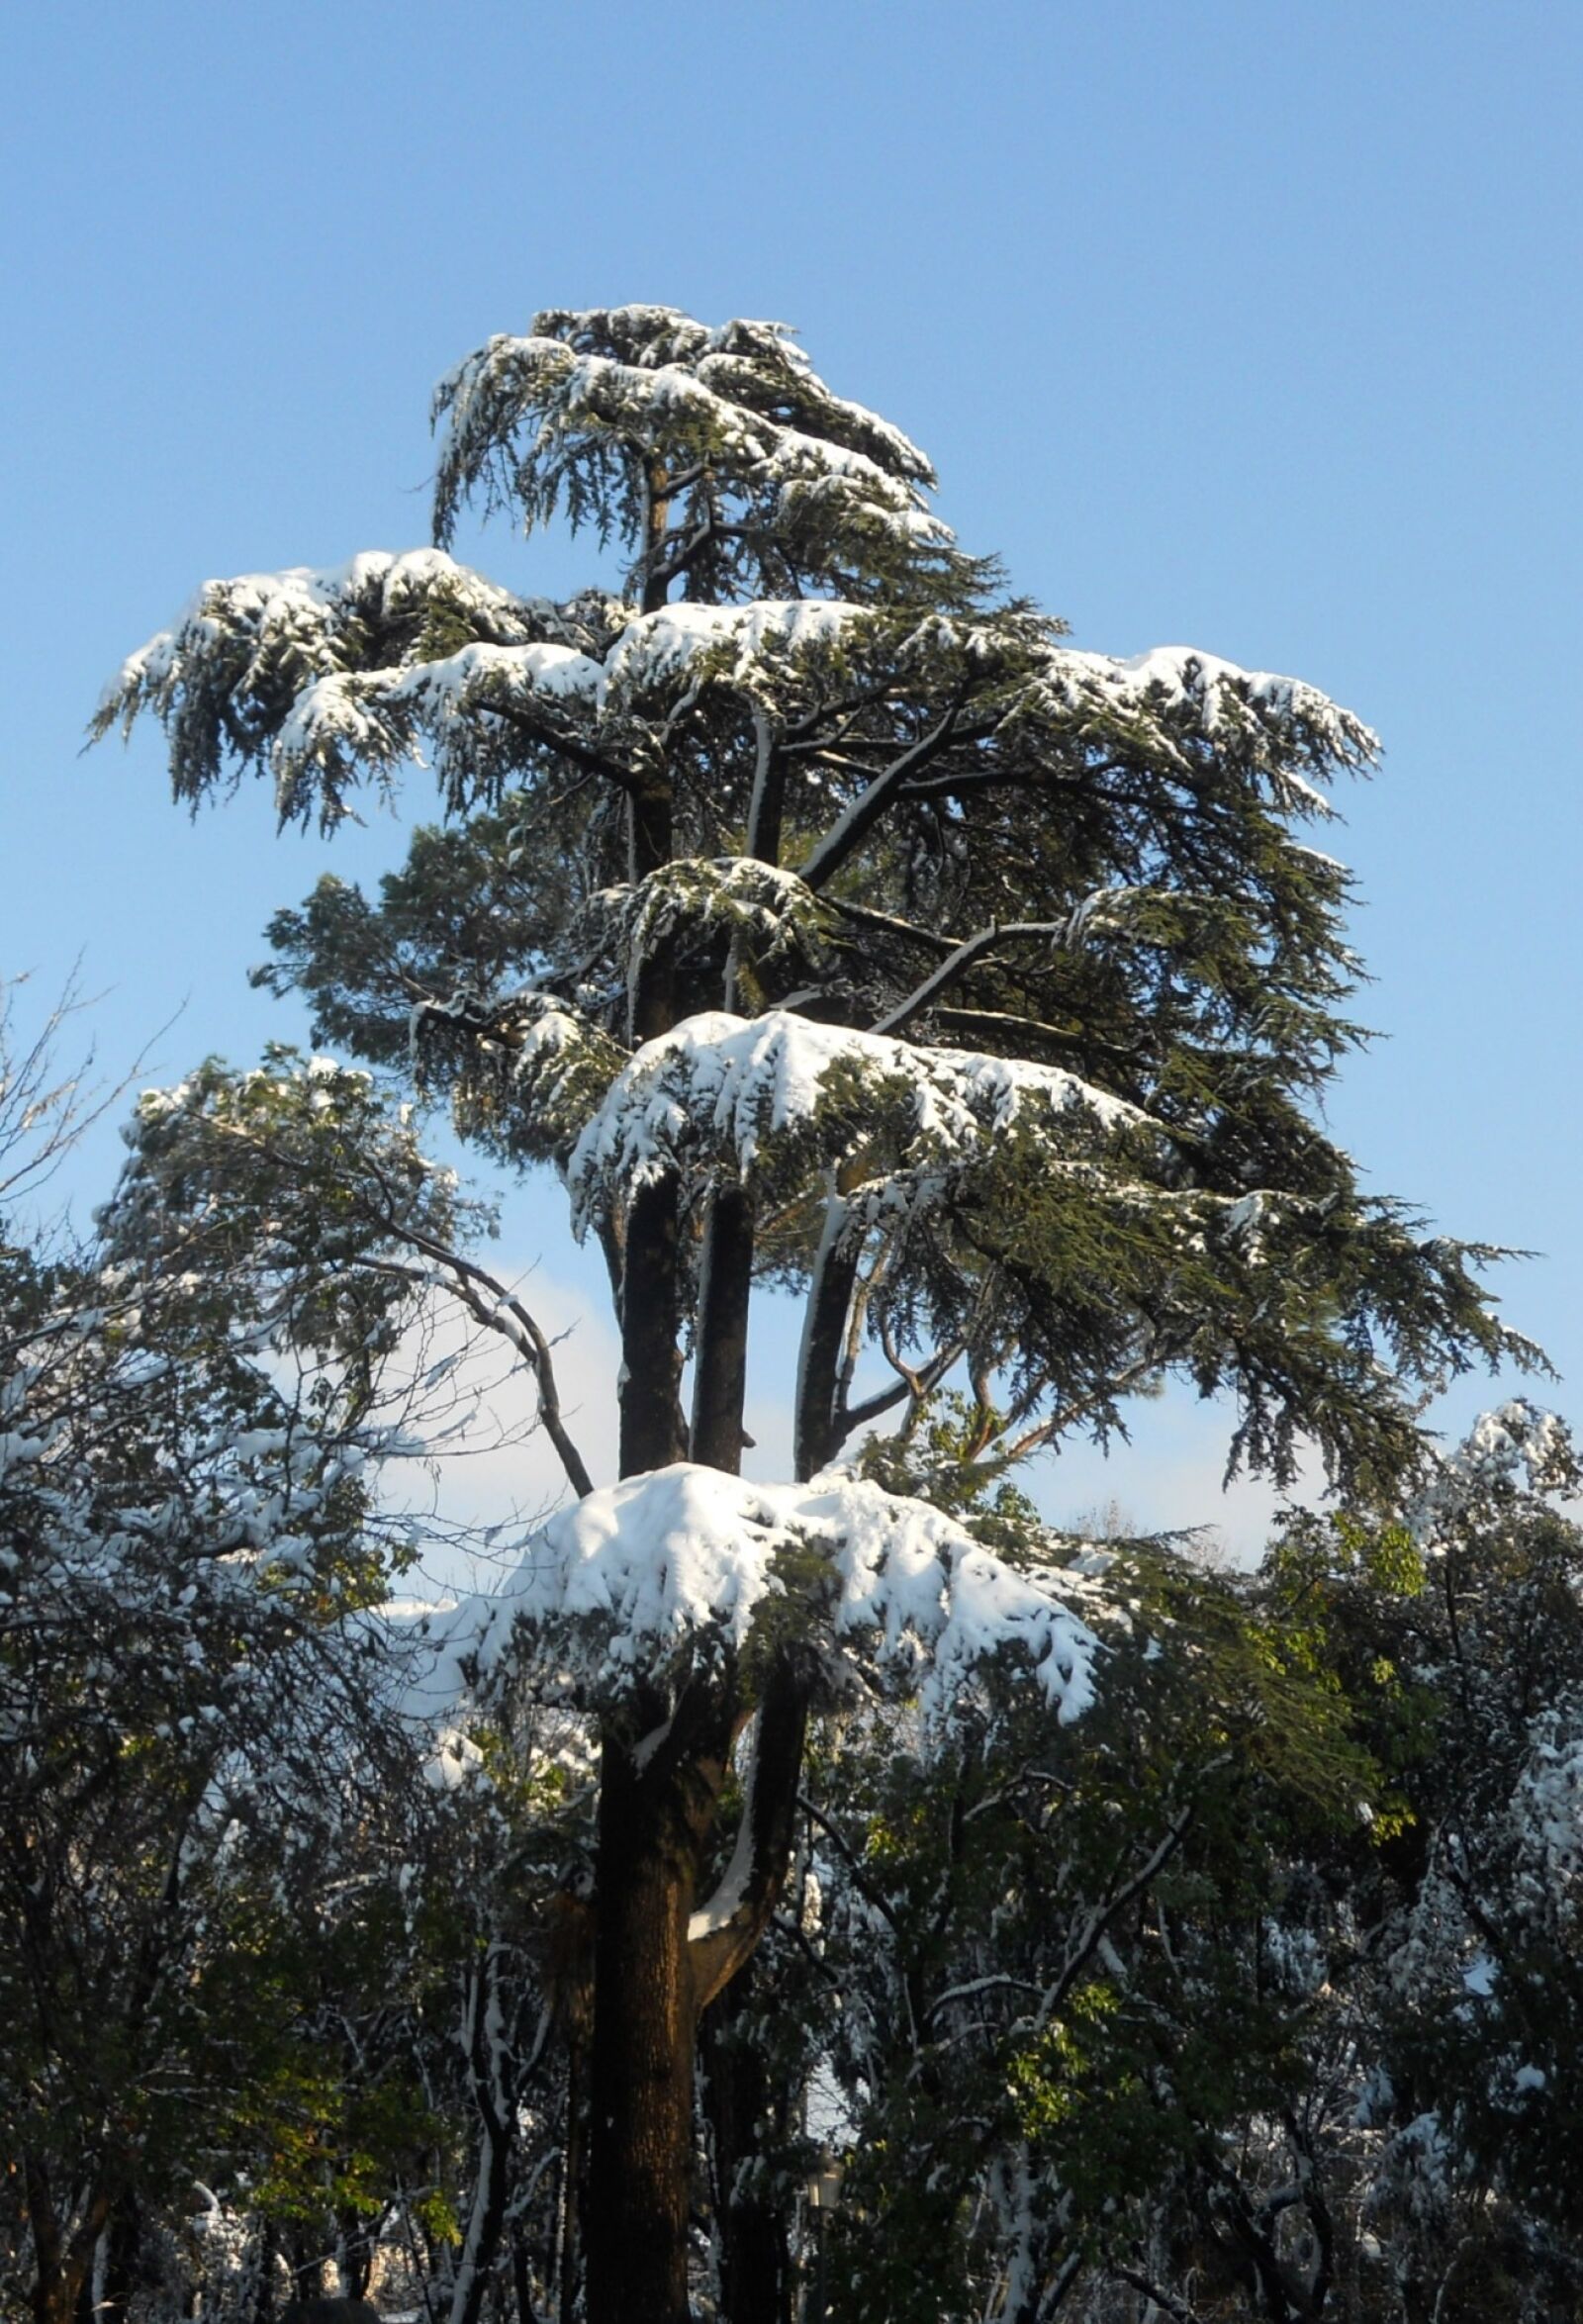 Nikon Coolpix S570 sample photo. Pine, snow, villa borghese photography